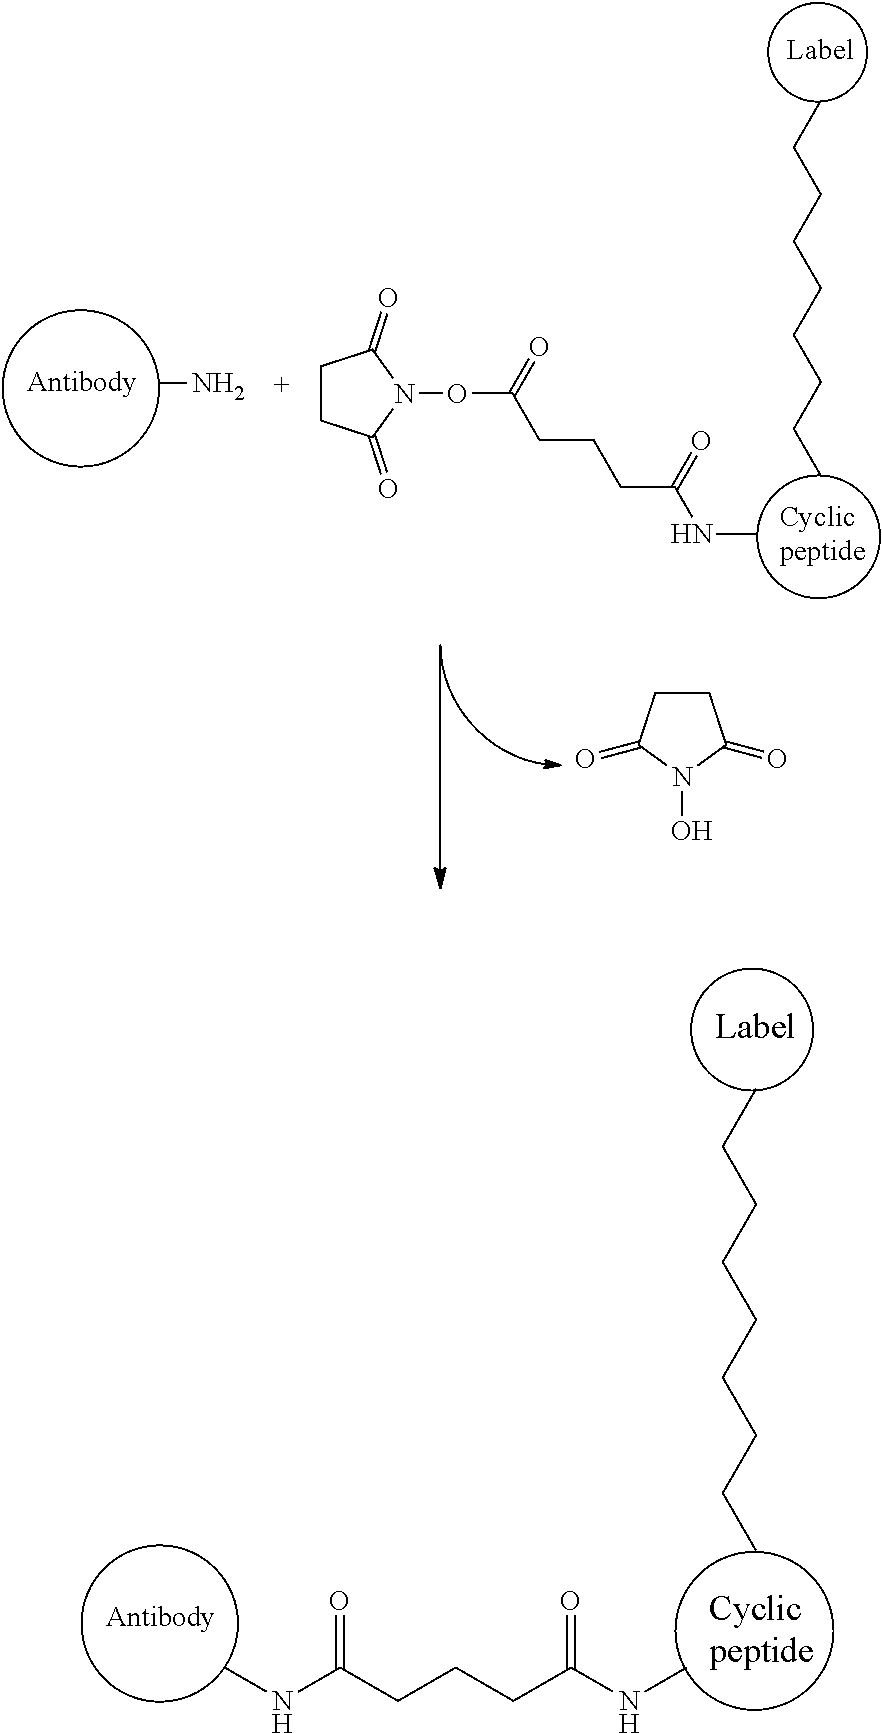 Cyclic peptide, affinity chromatography support, labeled antibody, antibody drug conjugate, and pharmaceutical preparation